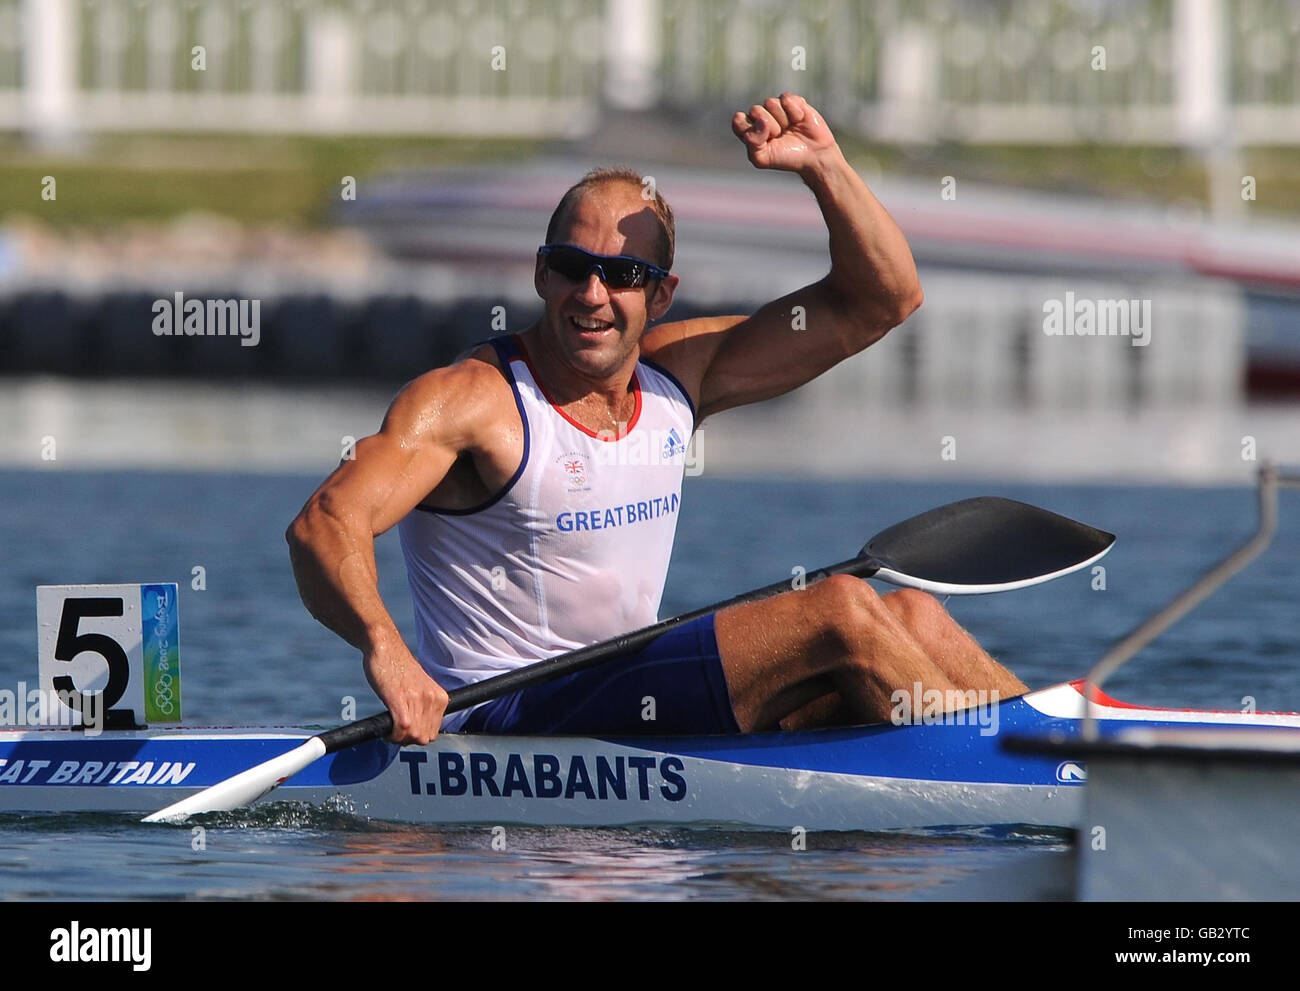 Tim Brabant, en Grande-Bretagne, célèbre son succès en médaille d'or lorsqu'il franchit la finale de 1 000 m de la coupe individuelle masculine de kayak (K1) lors de l'épreuve Flatwater au parc olympique d'aviron-canoë de Shunyi, à Pékin, lors des Jeux Olympiques de Beijing en 2008. Banque D'Images